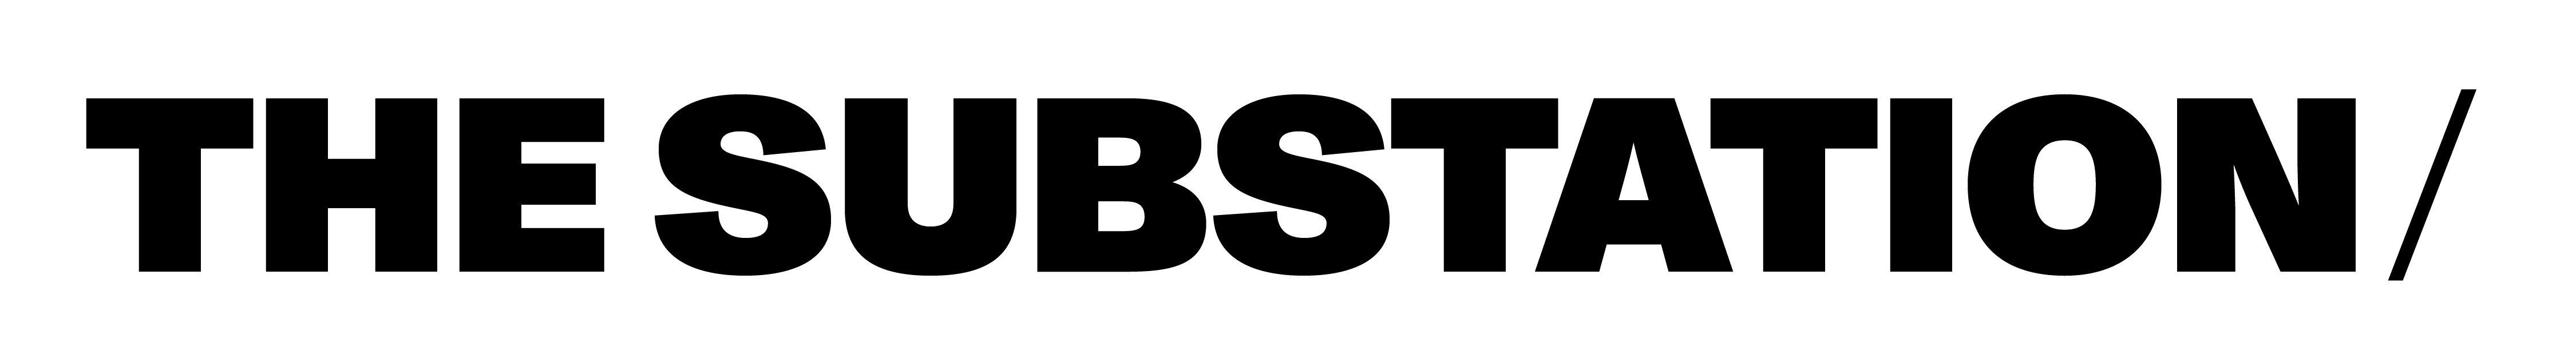 The Substation Logo